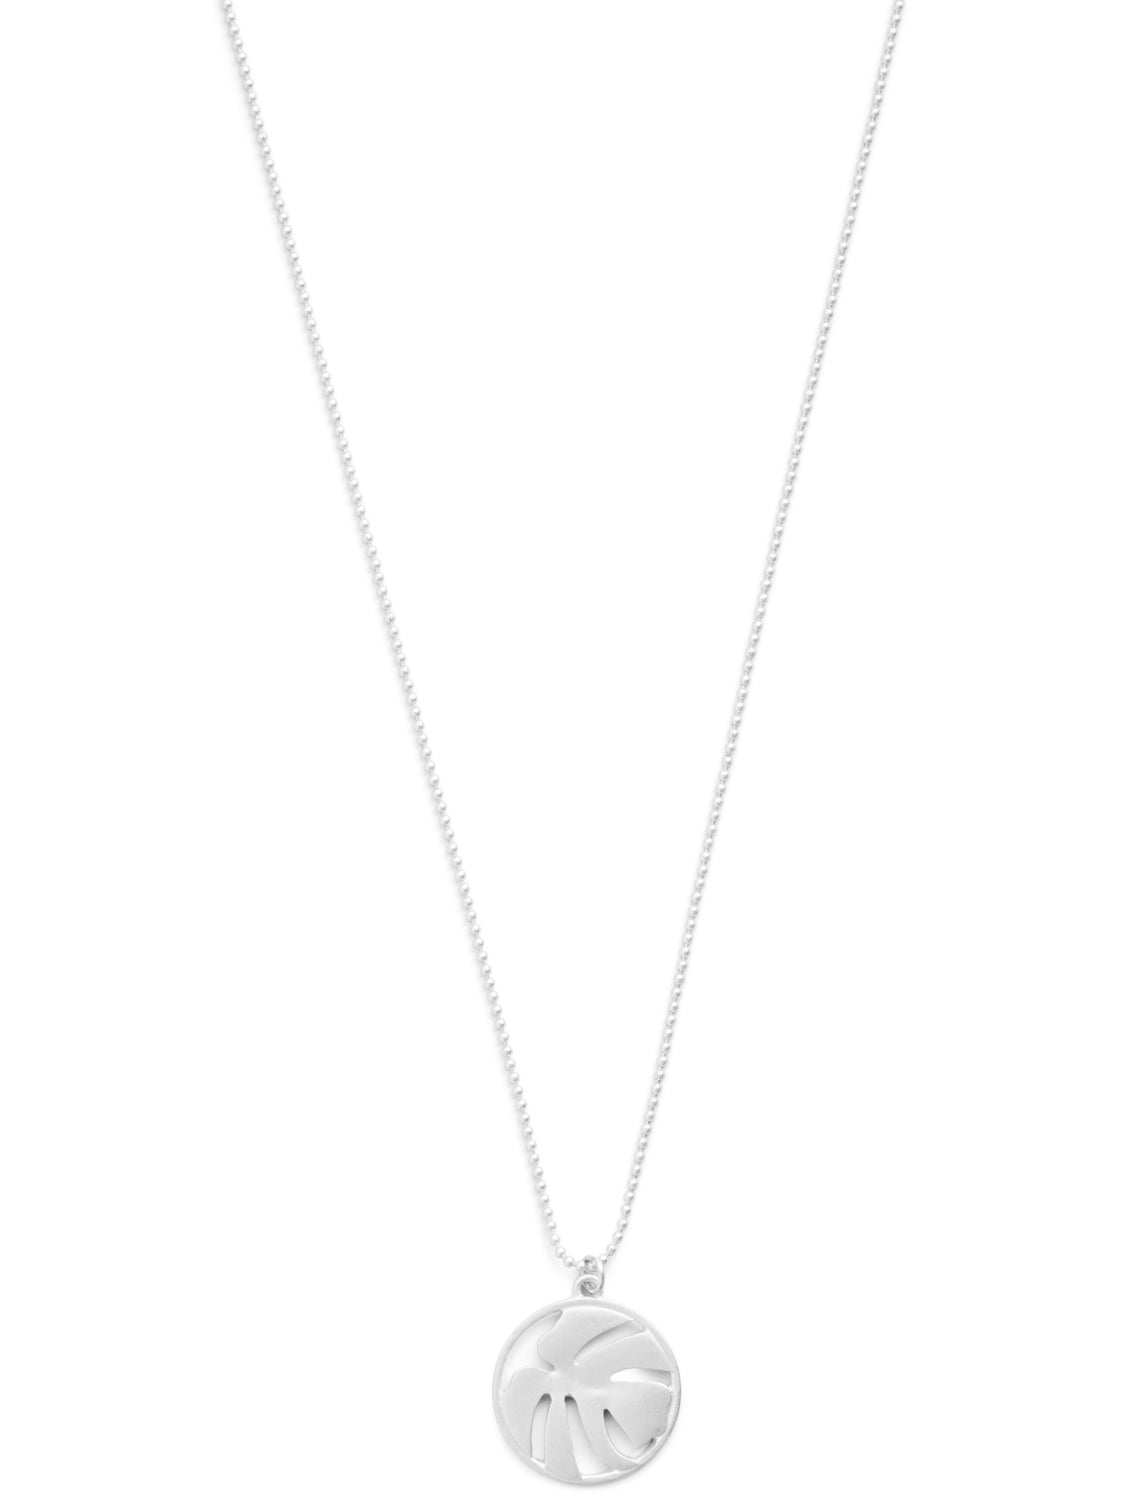 VIEFJ Necklace - silver colour